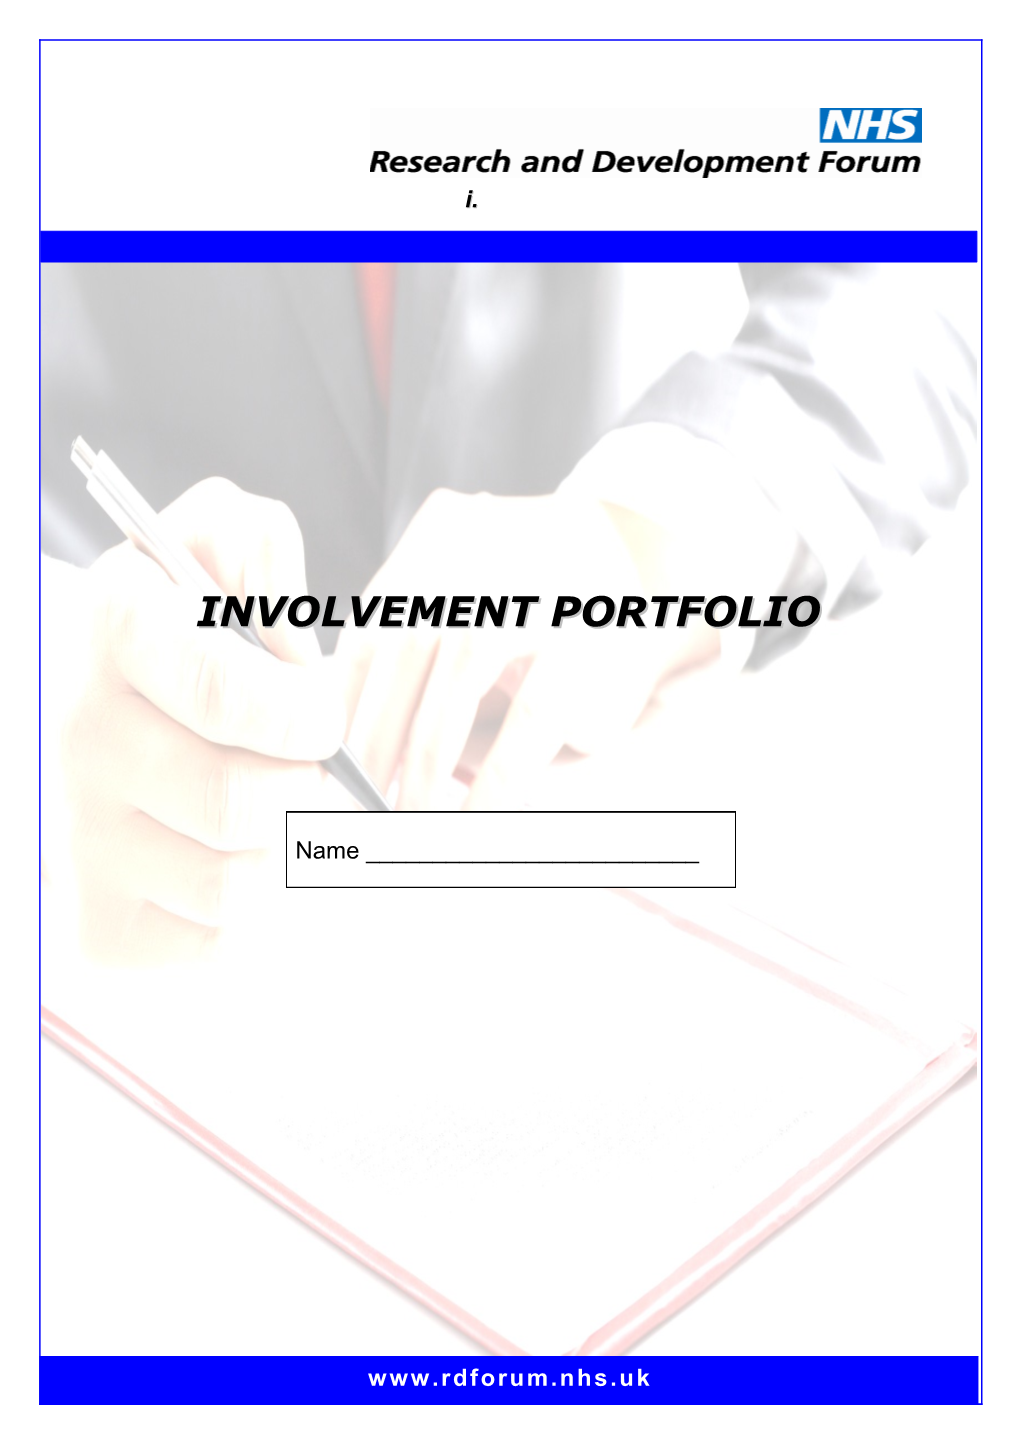 Involvement Portfolio